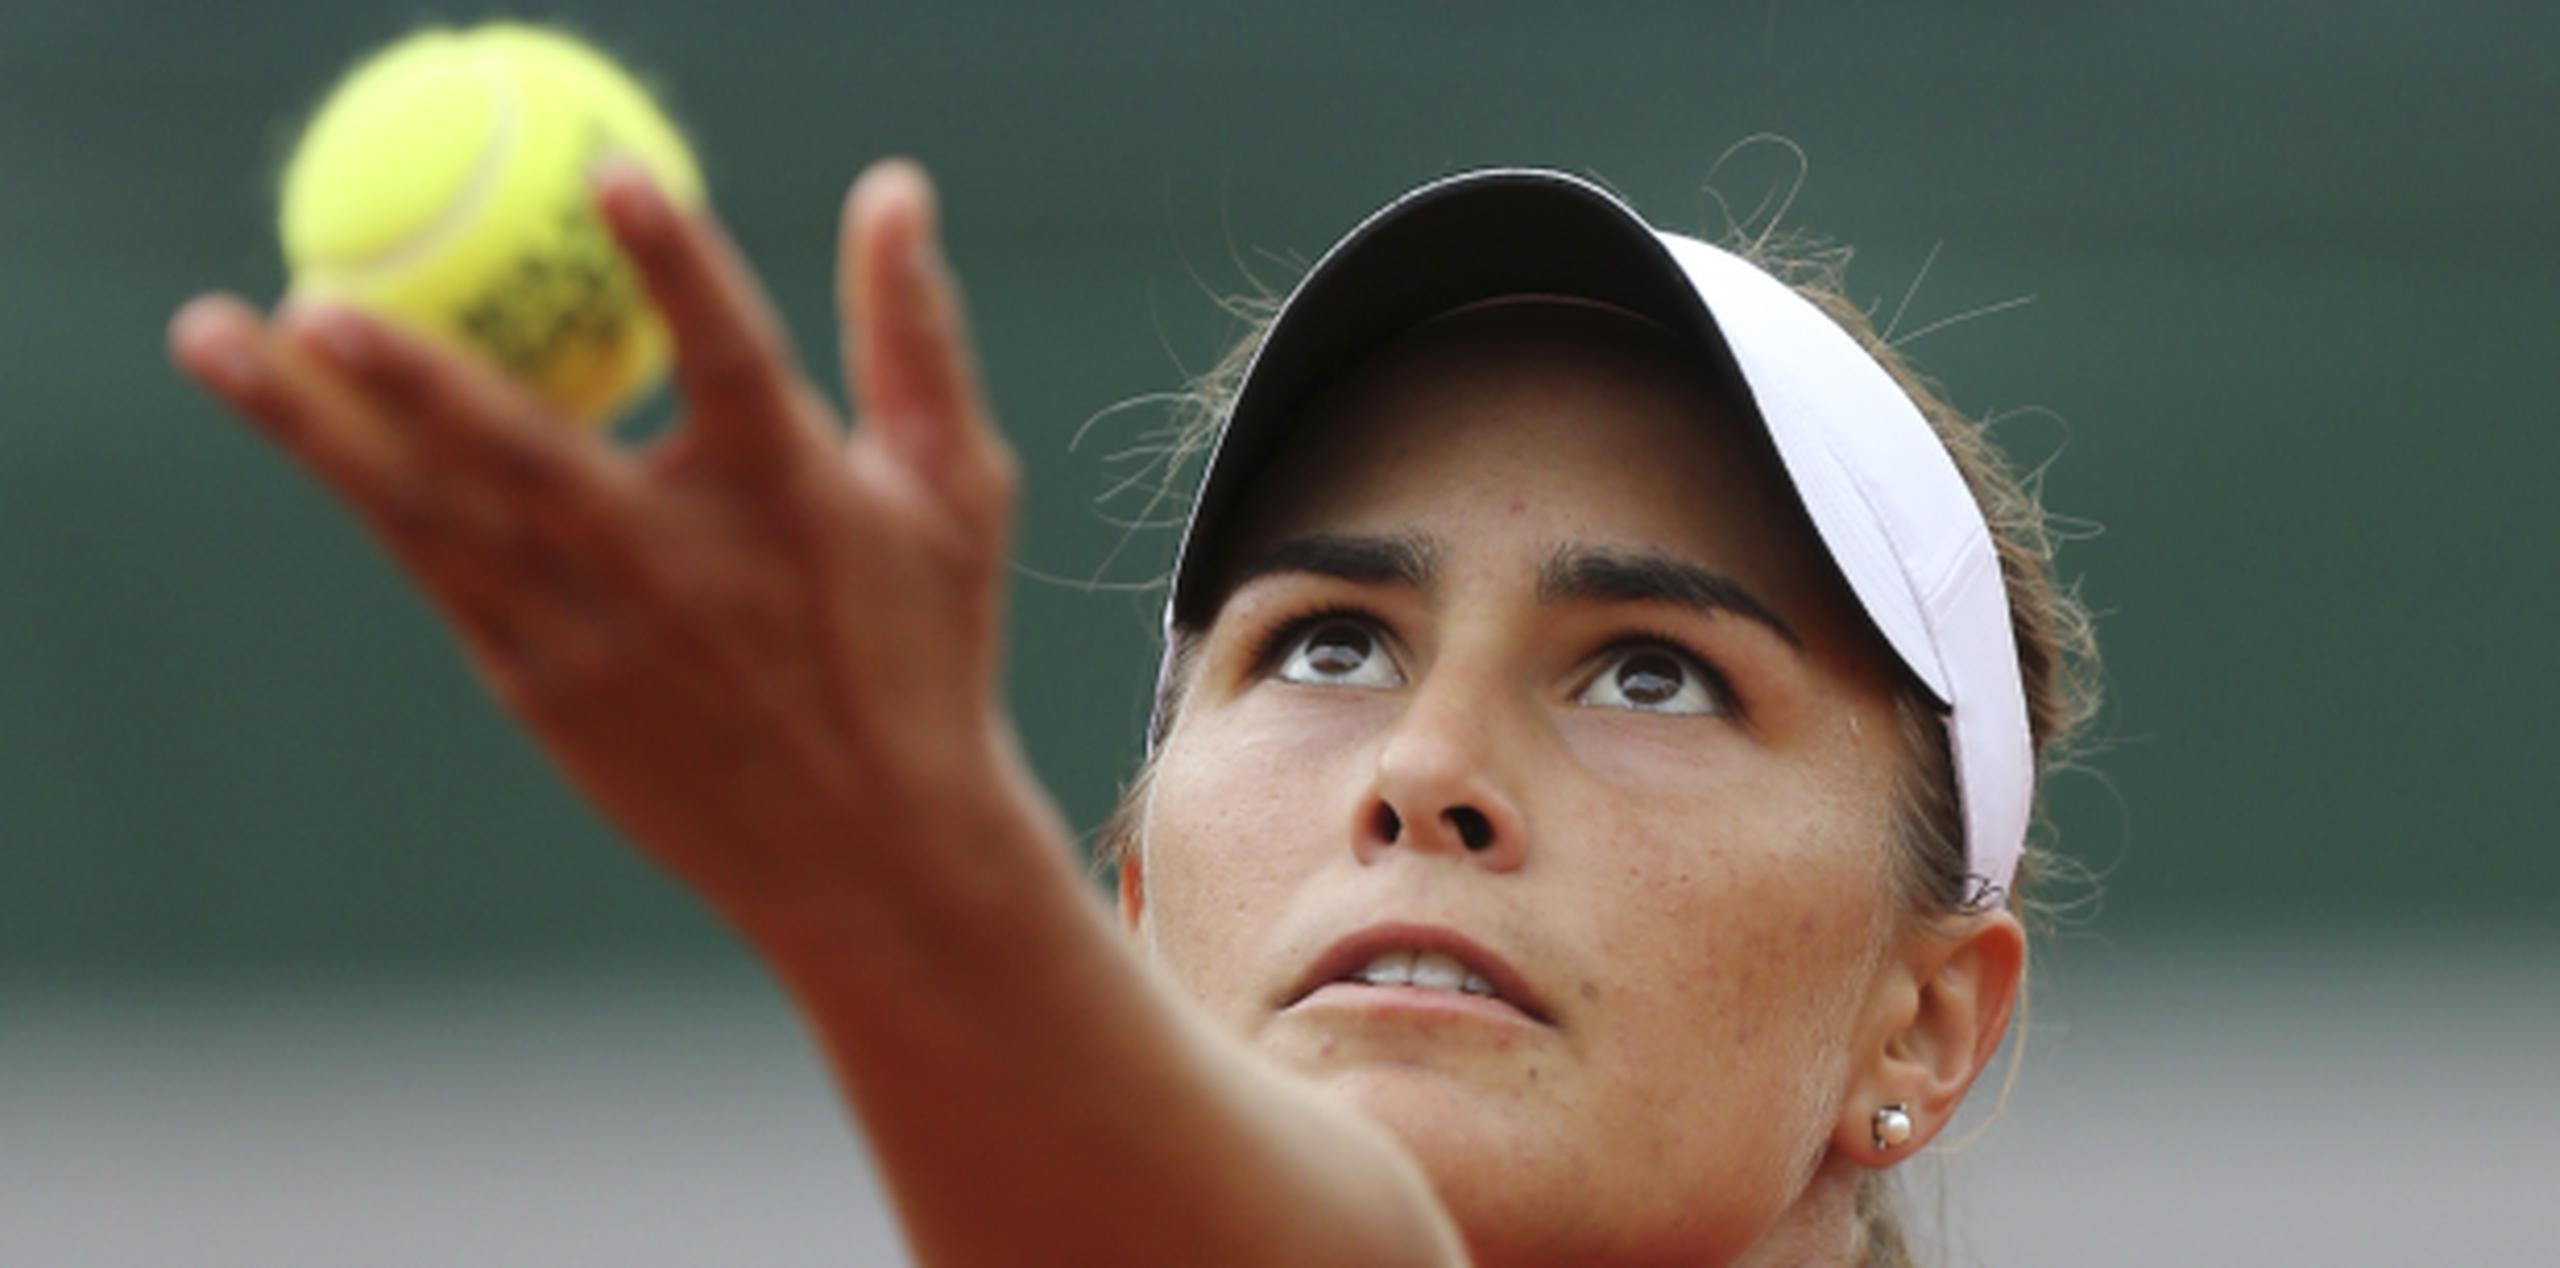 La semana pasada, Mónica Puig culminó su participación en el US Open cuando fue eliminada en la segunda ronda el torneo.